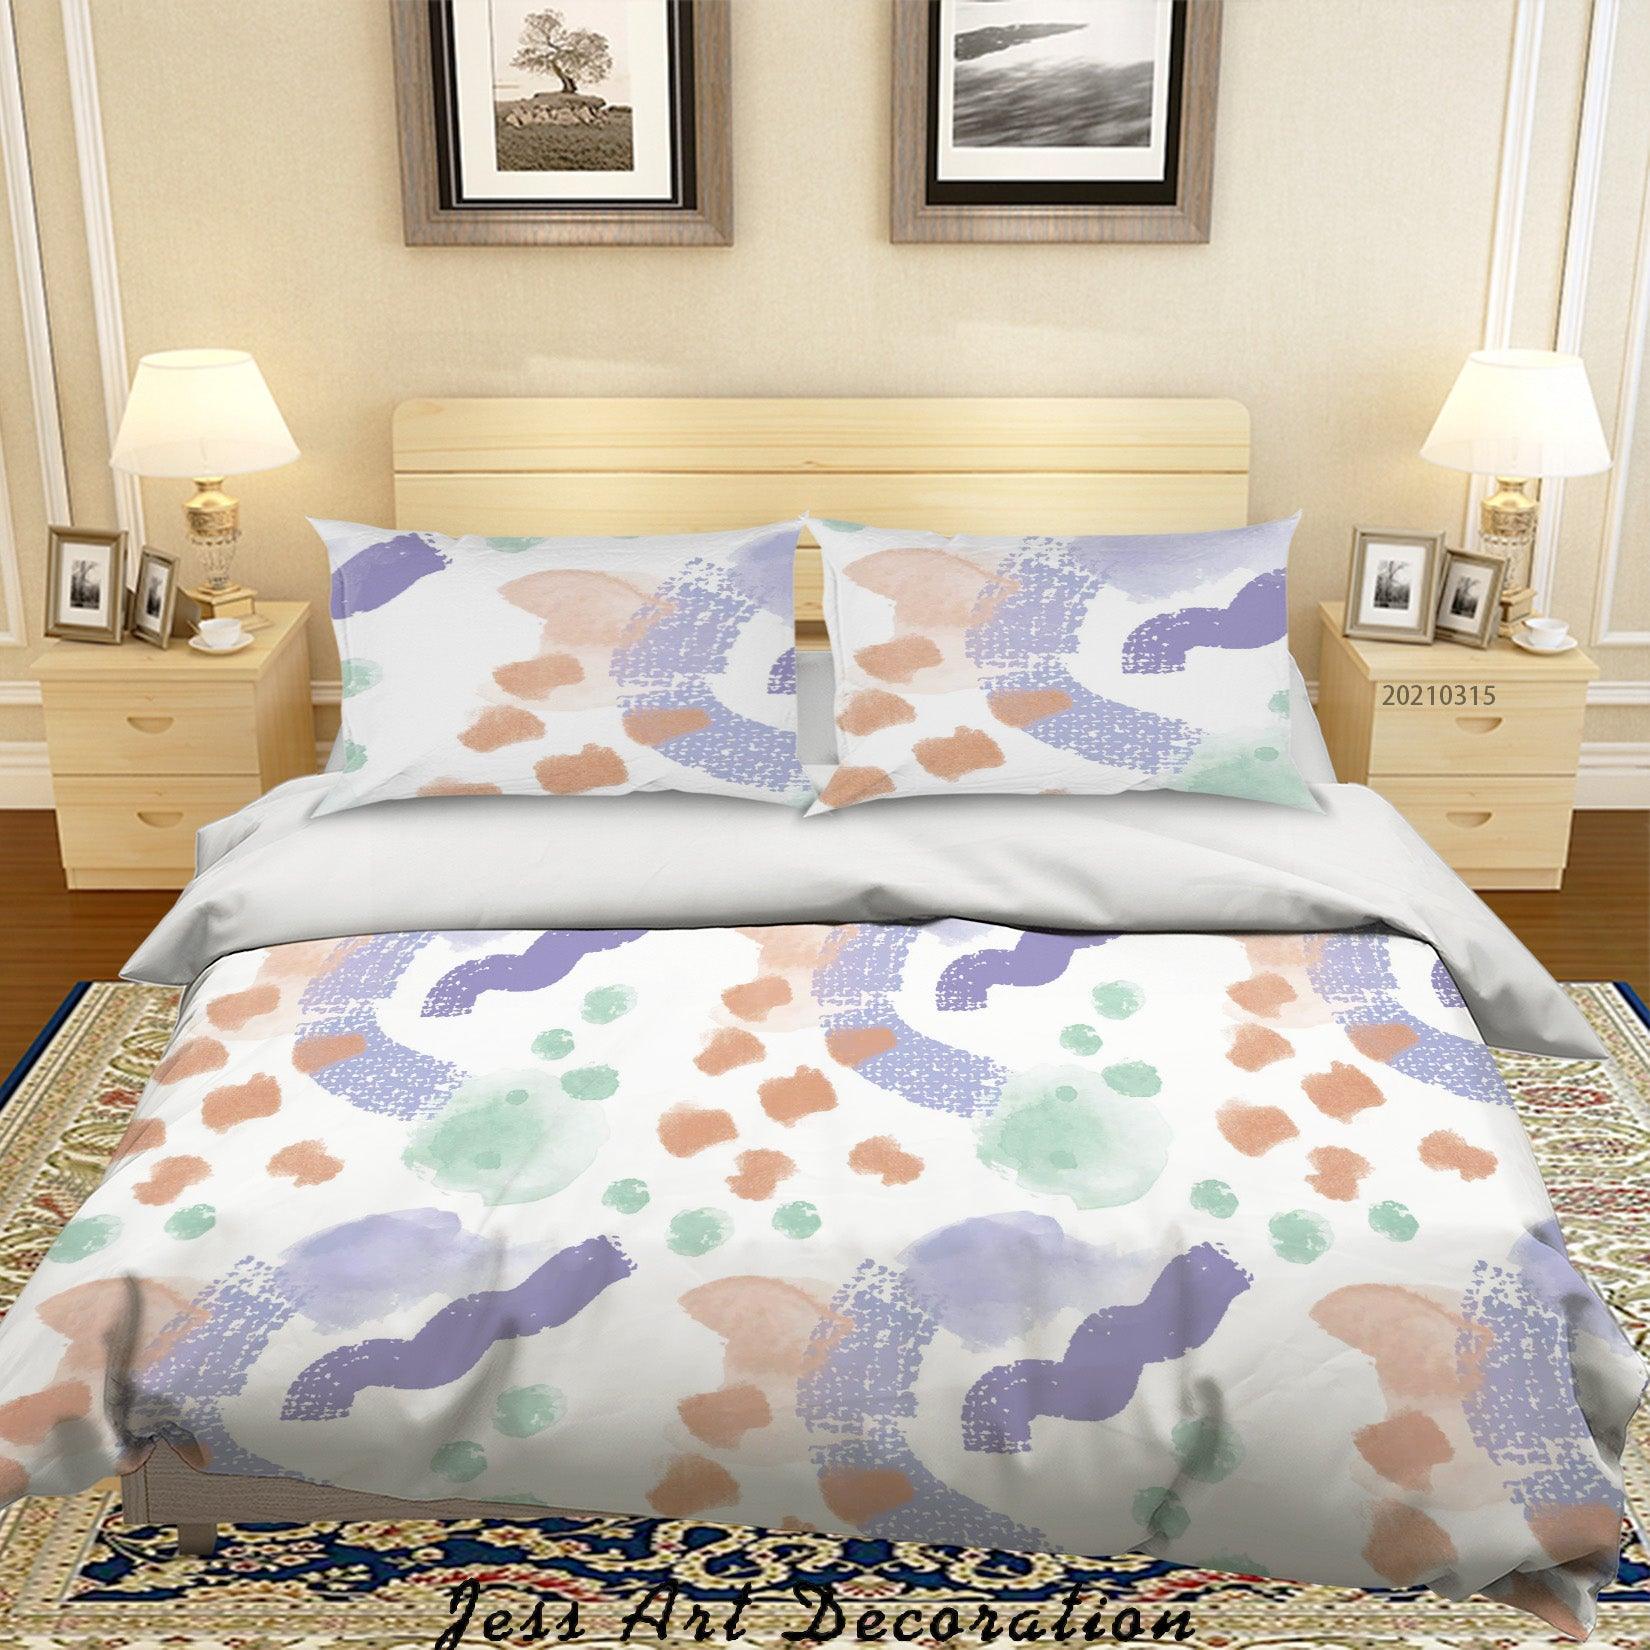 3D Watercolor Graffiti Pattern Quilt Cover Set Bedding Set Duvet Cover Pillowcases 98- Jess Art Decoration